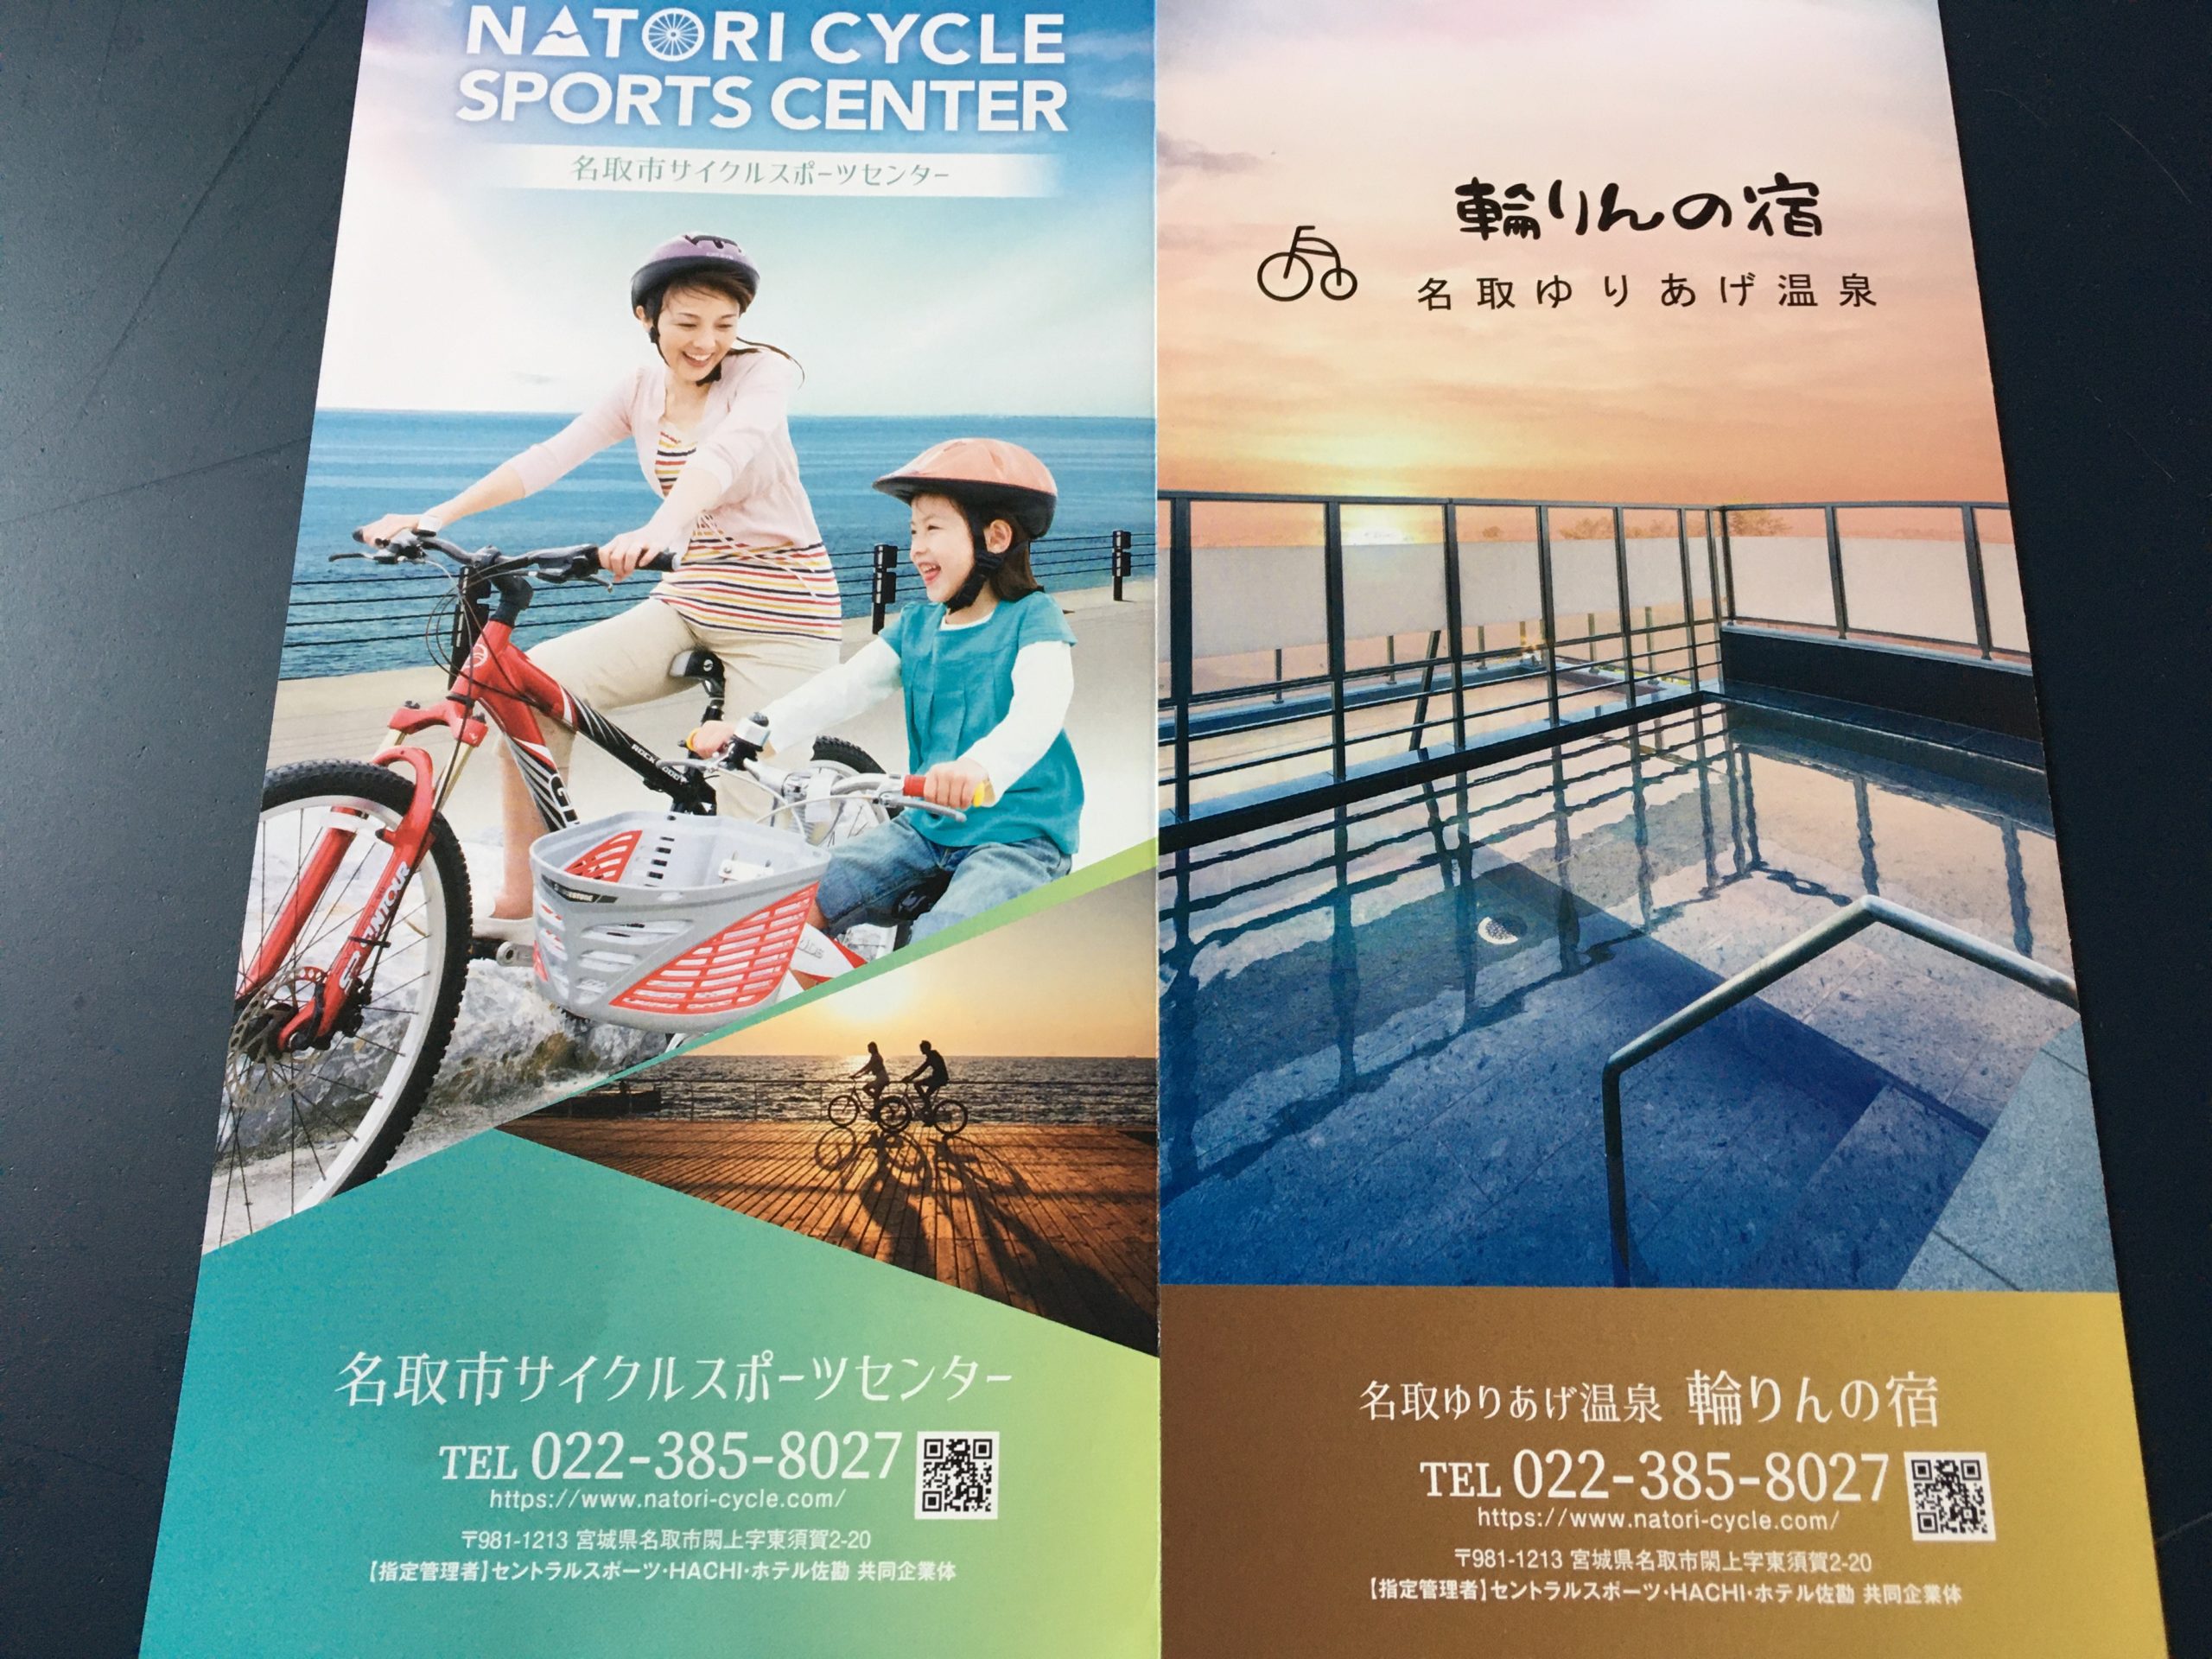 サイクリング 閖上 名取市サイクルスポーツセンターがオープンしました！